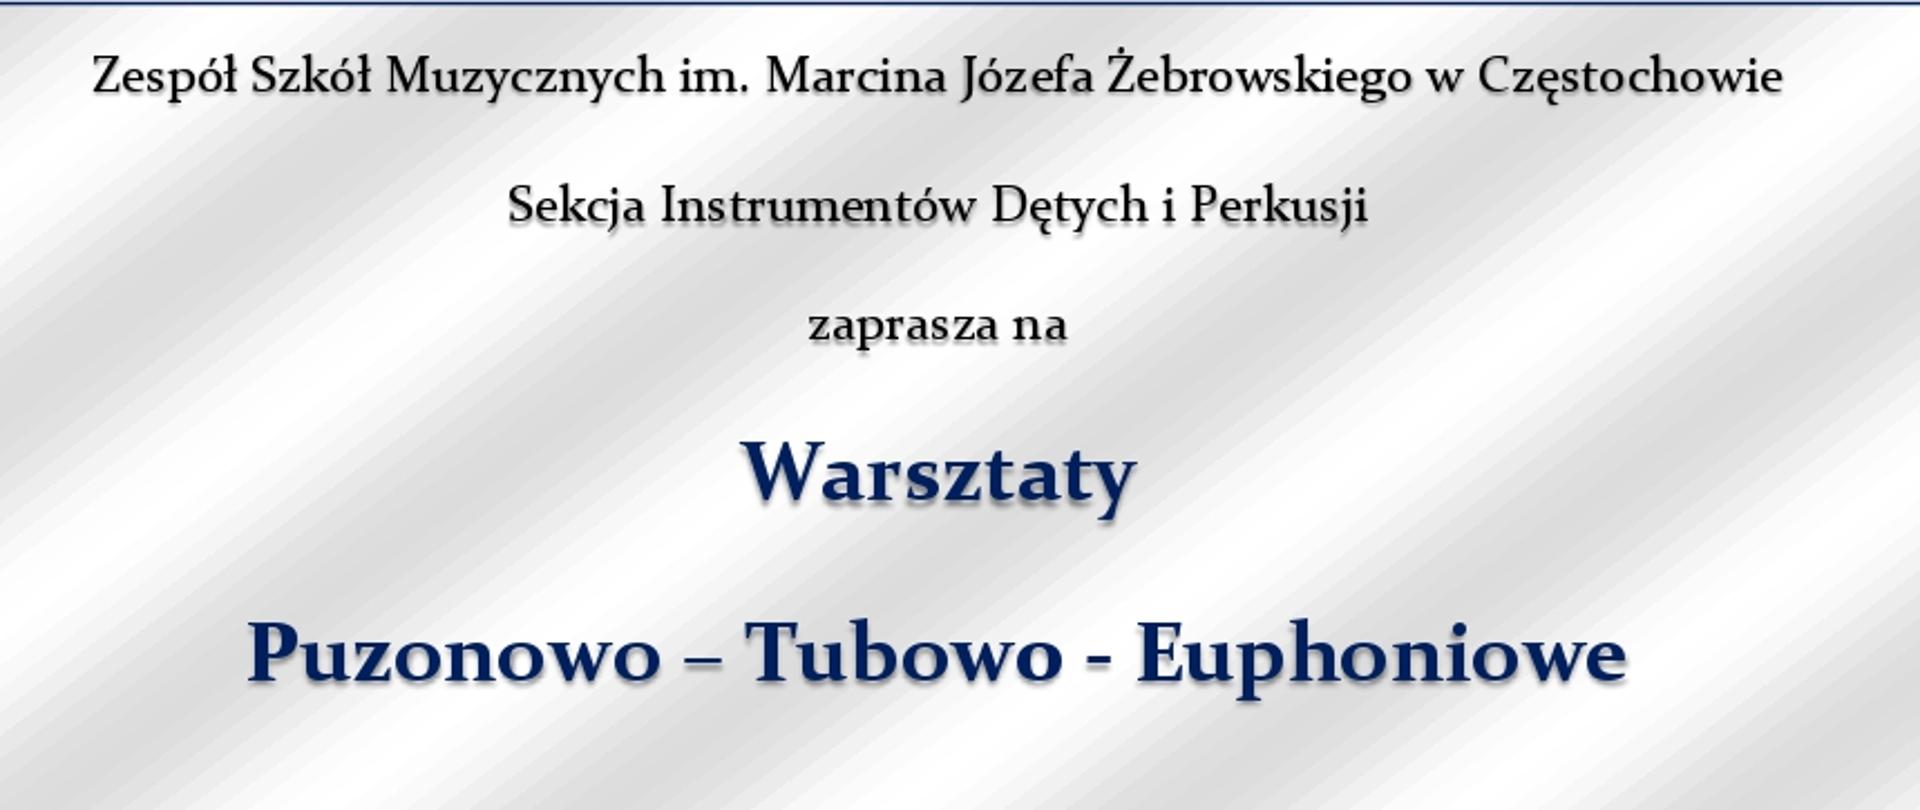 Na szarym tle w granatowej ramce umieszczone informacje dotyczące warsztatów oraz zdjęcie prof. dr hab. Zdzisława Stolarczyka.